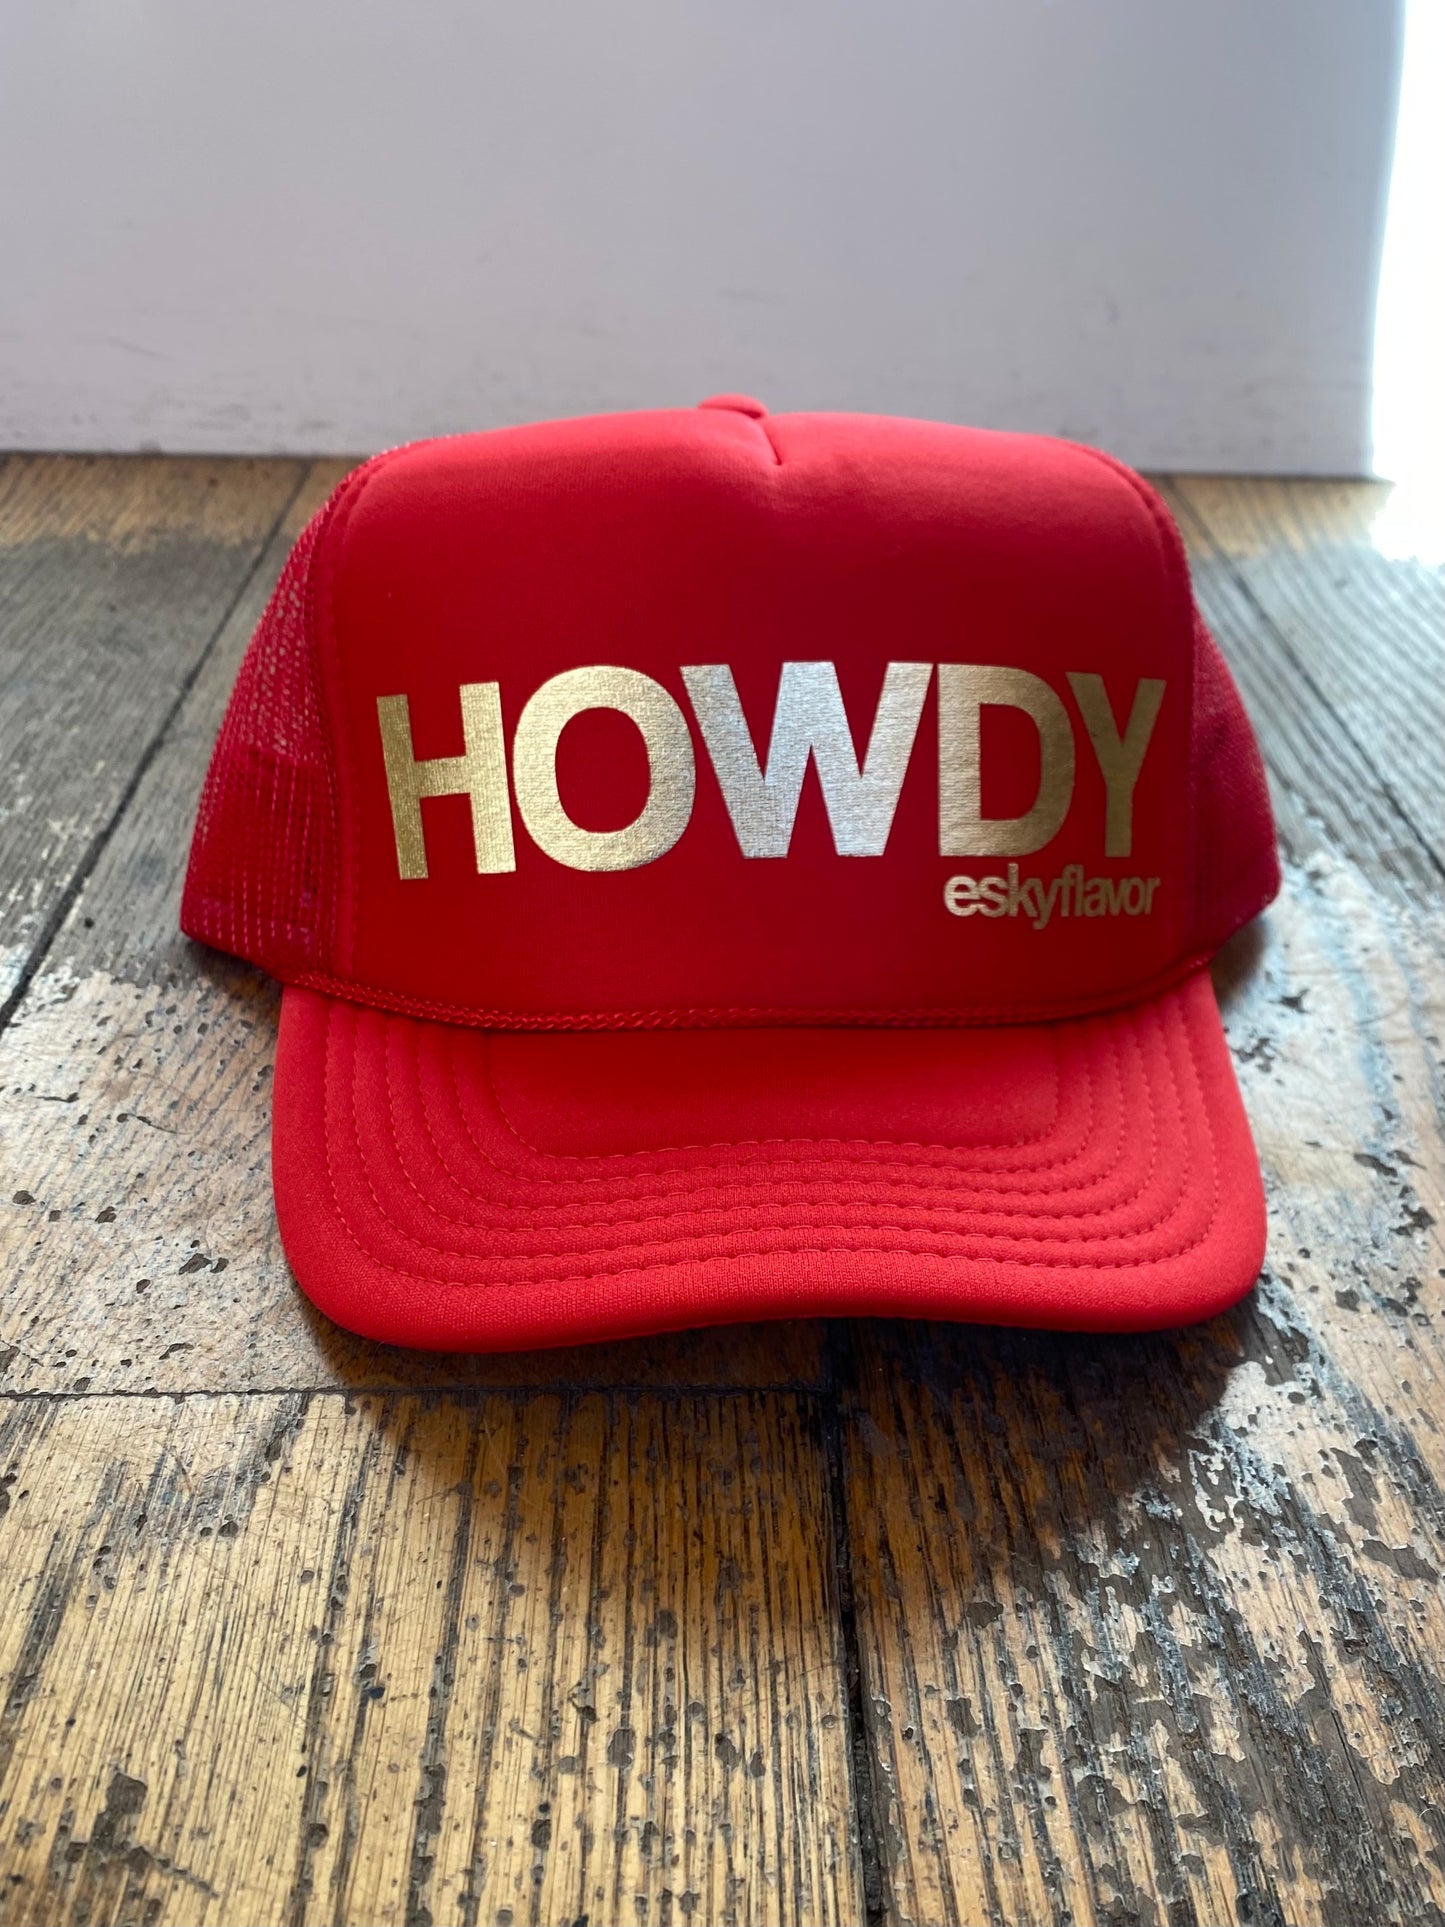 EskyFlavor HOWDY hat